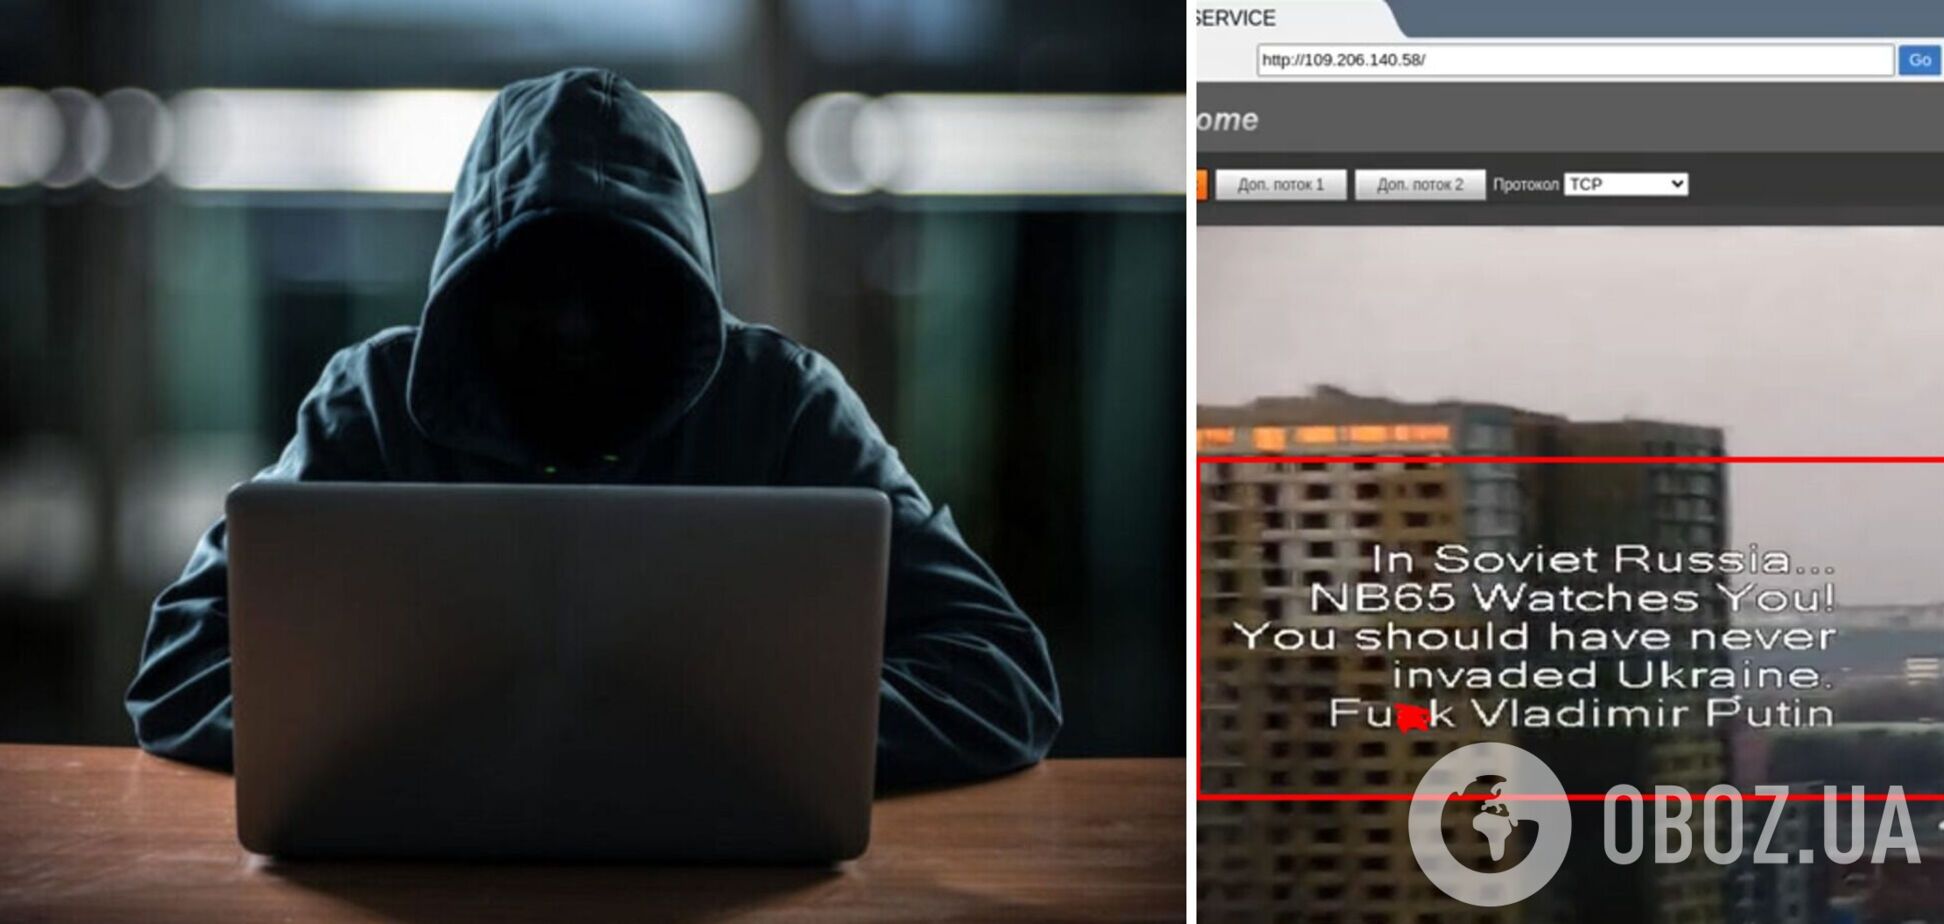 Хакеры взломали систему видеонаблюдения в Москве и оставили послание Путину. Видео